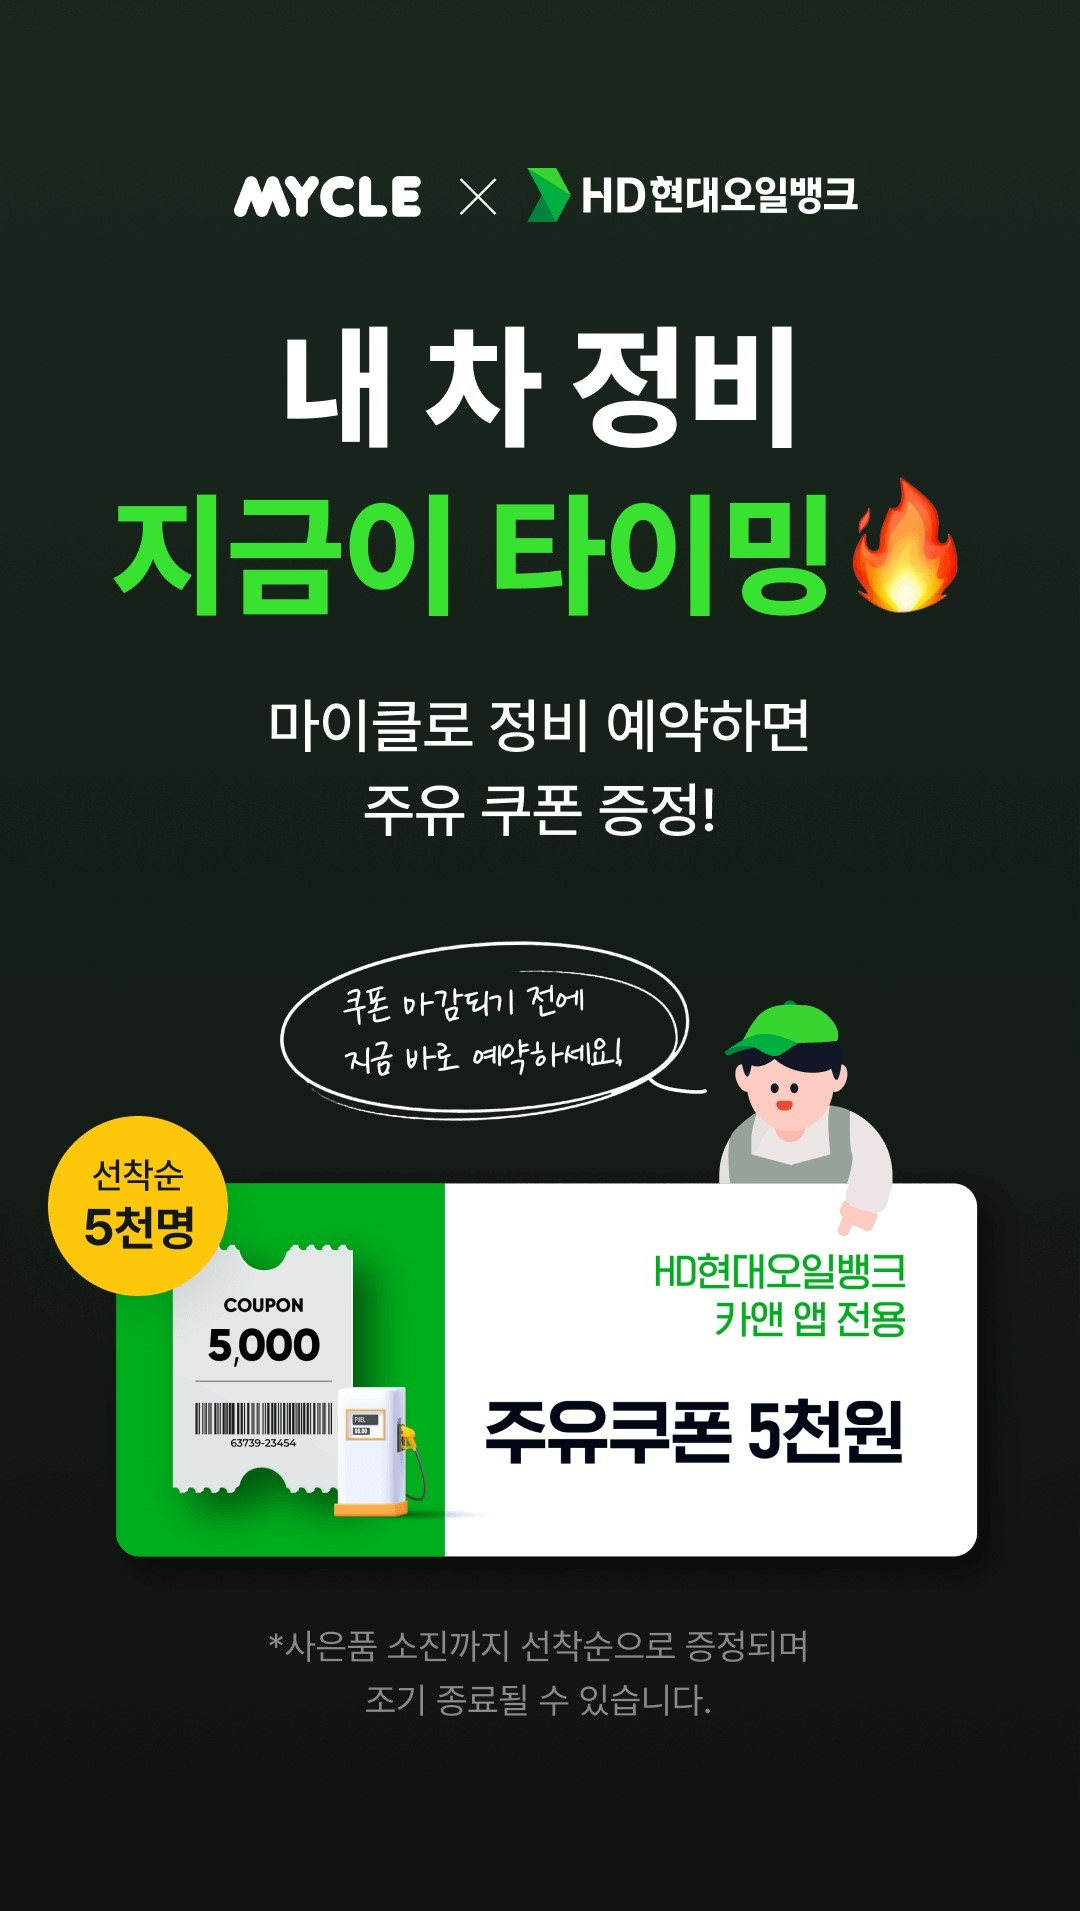 HD현대오일뱅크, 차량 관리 플랫폼 ‘마이클 앱’ 제휴 프로모션 진행